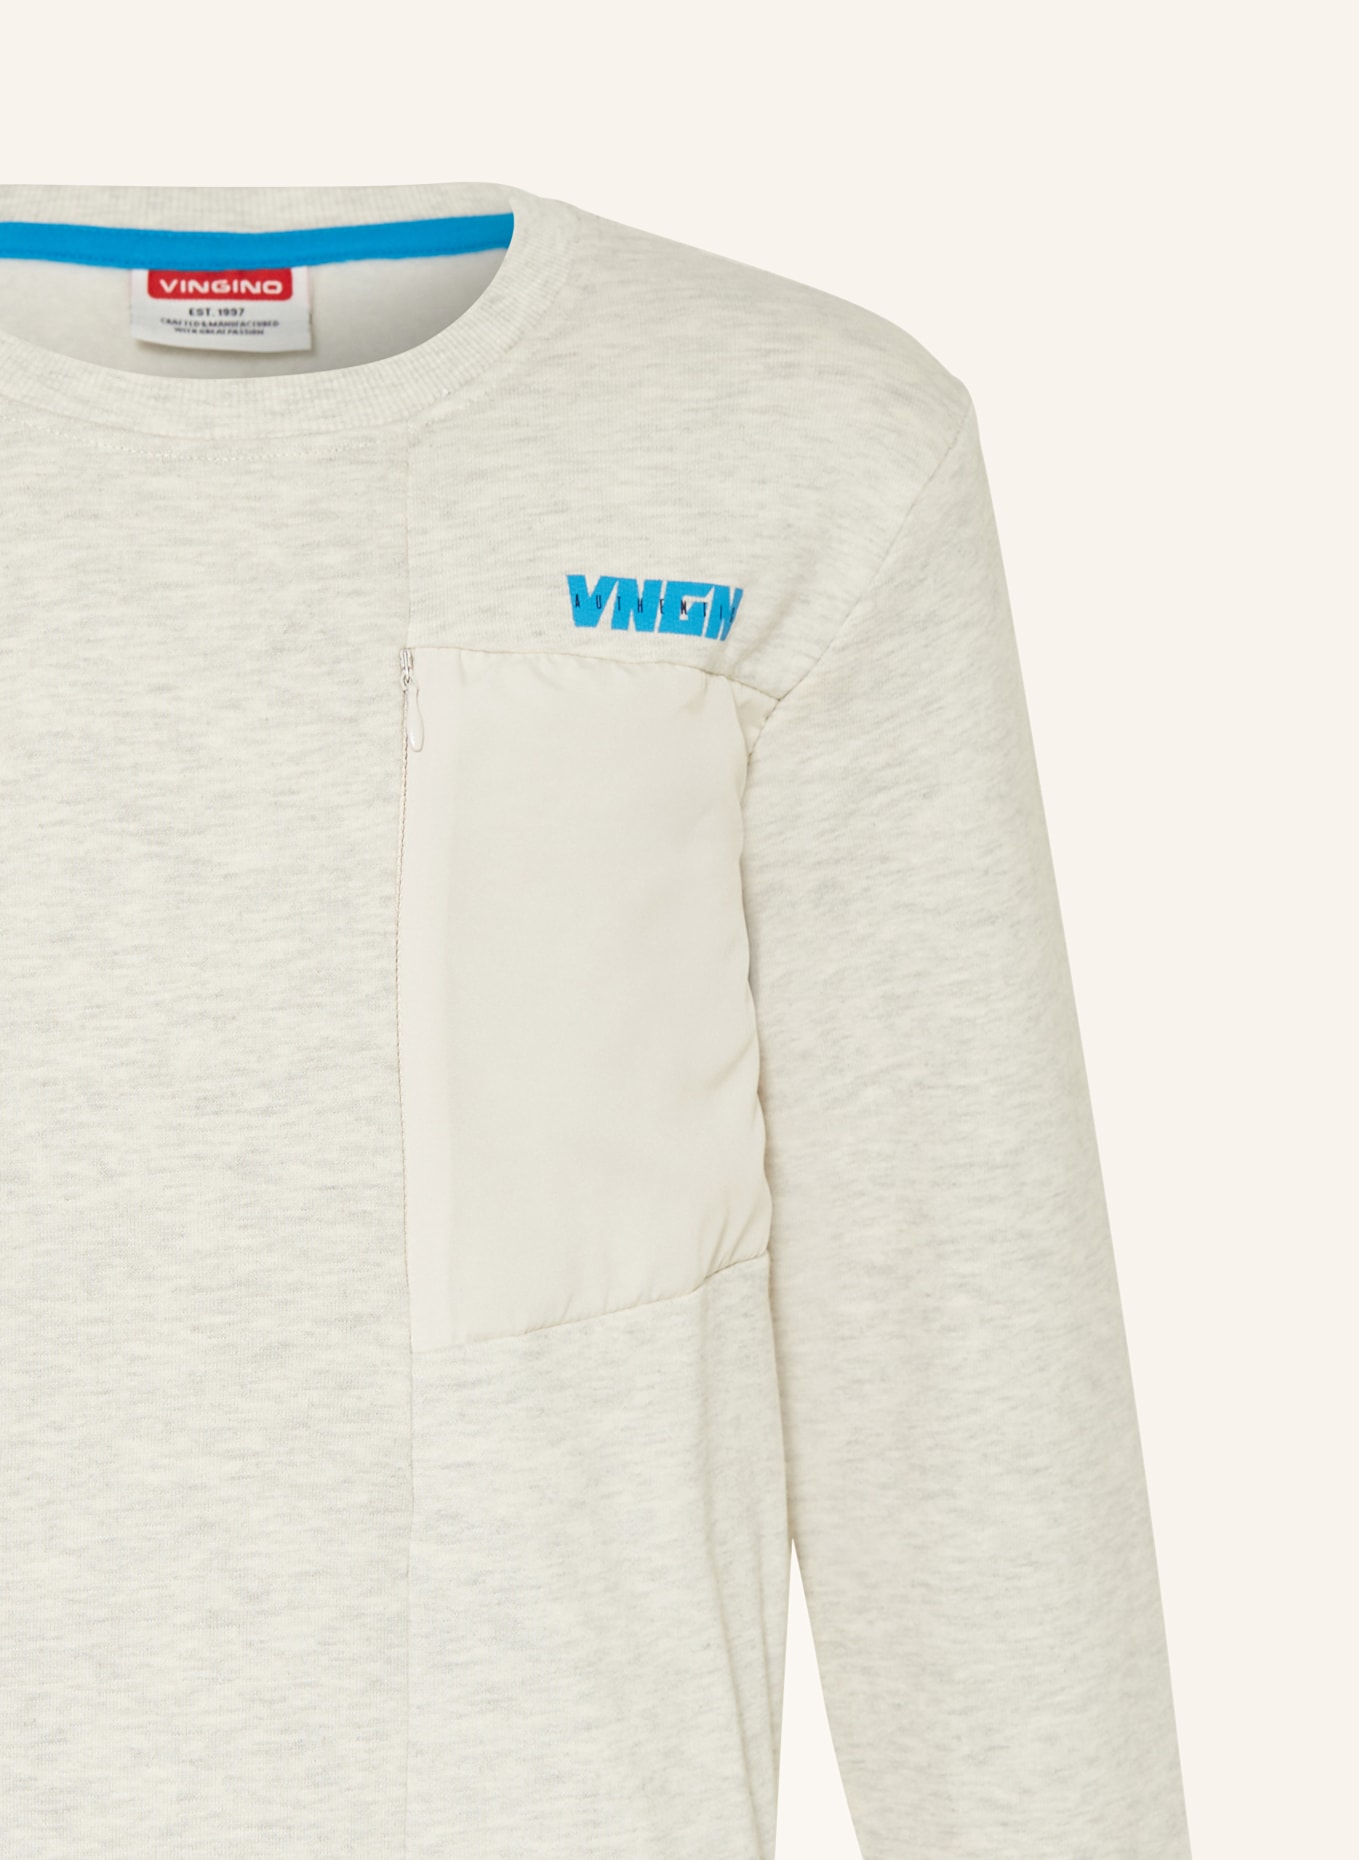 VINGINO Sweatshirt NEREO, Farbe: HELLGRAU/ WEISS (Bild 3)